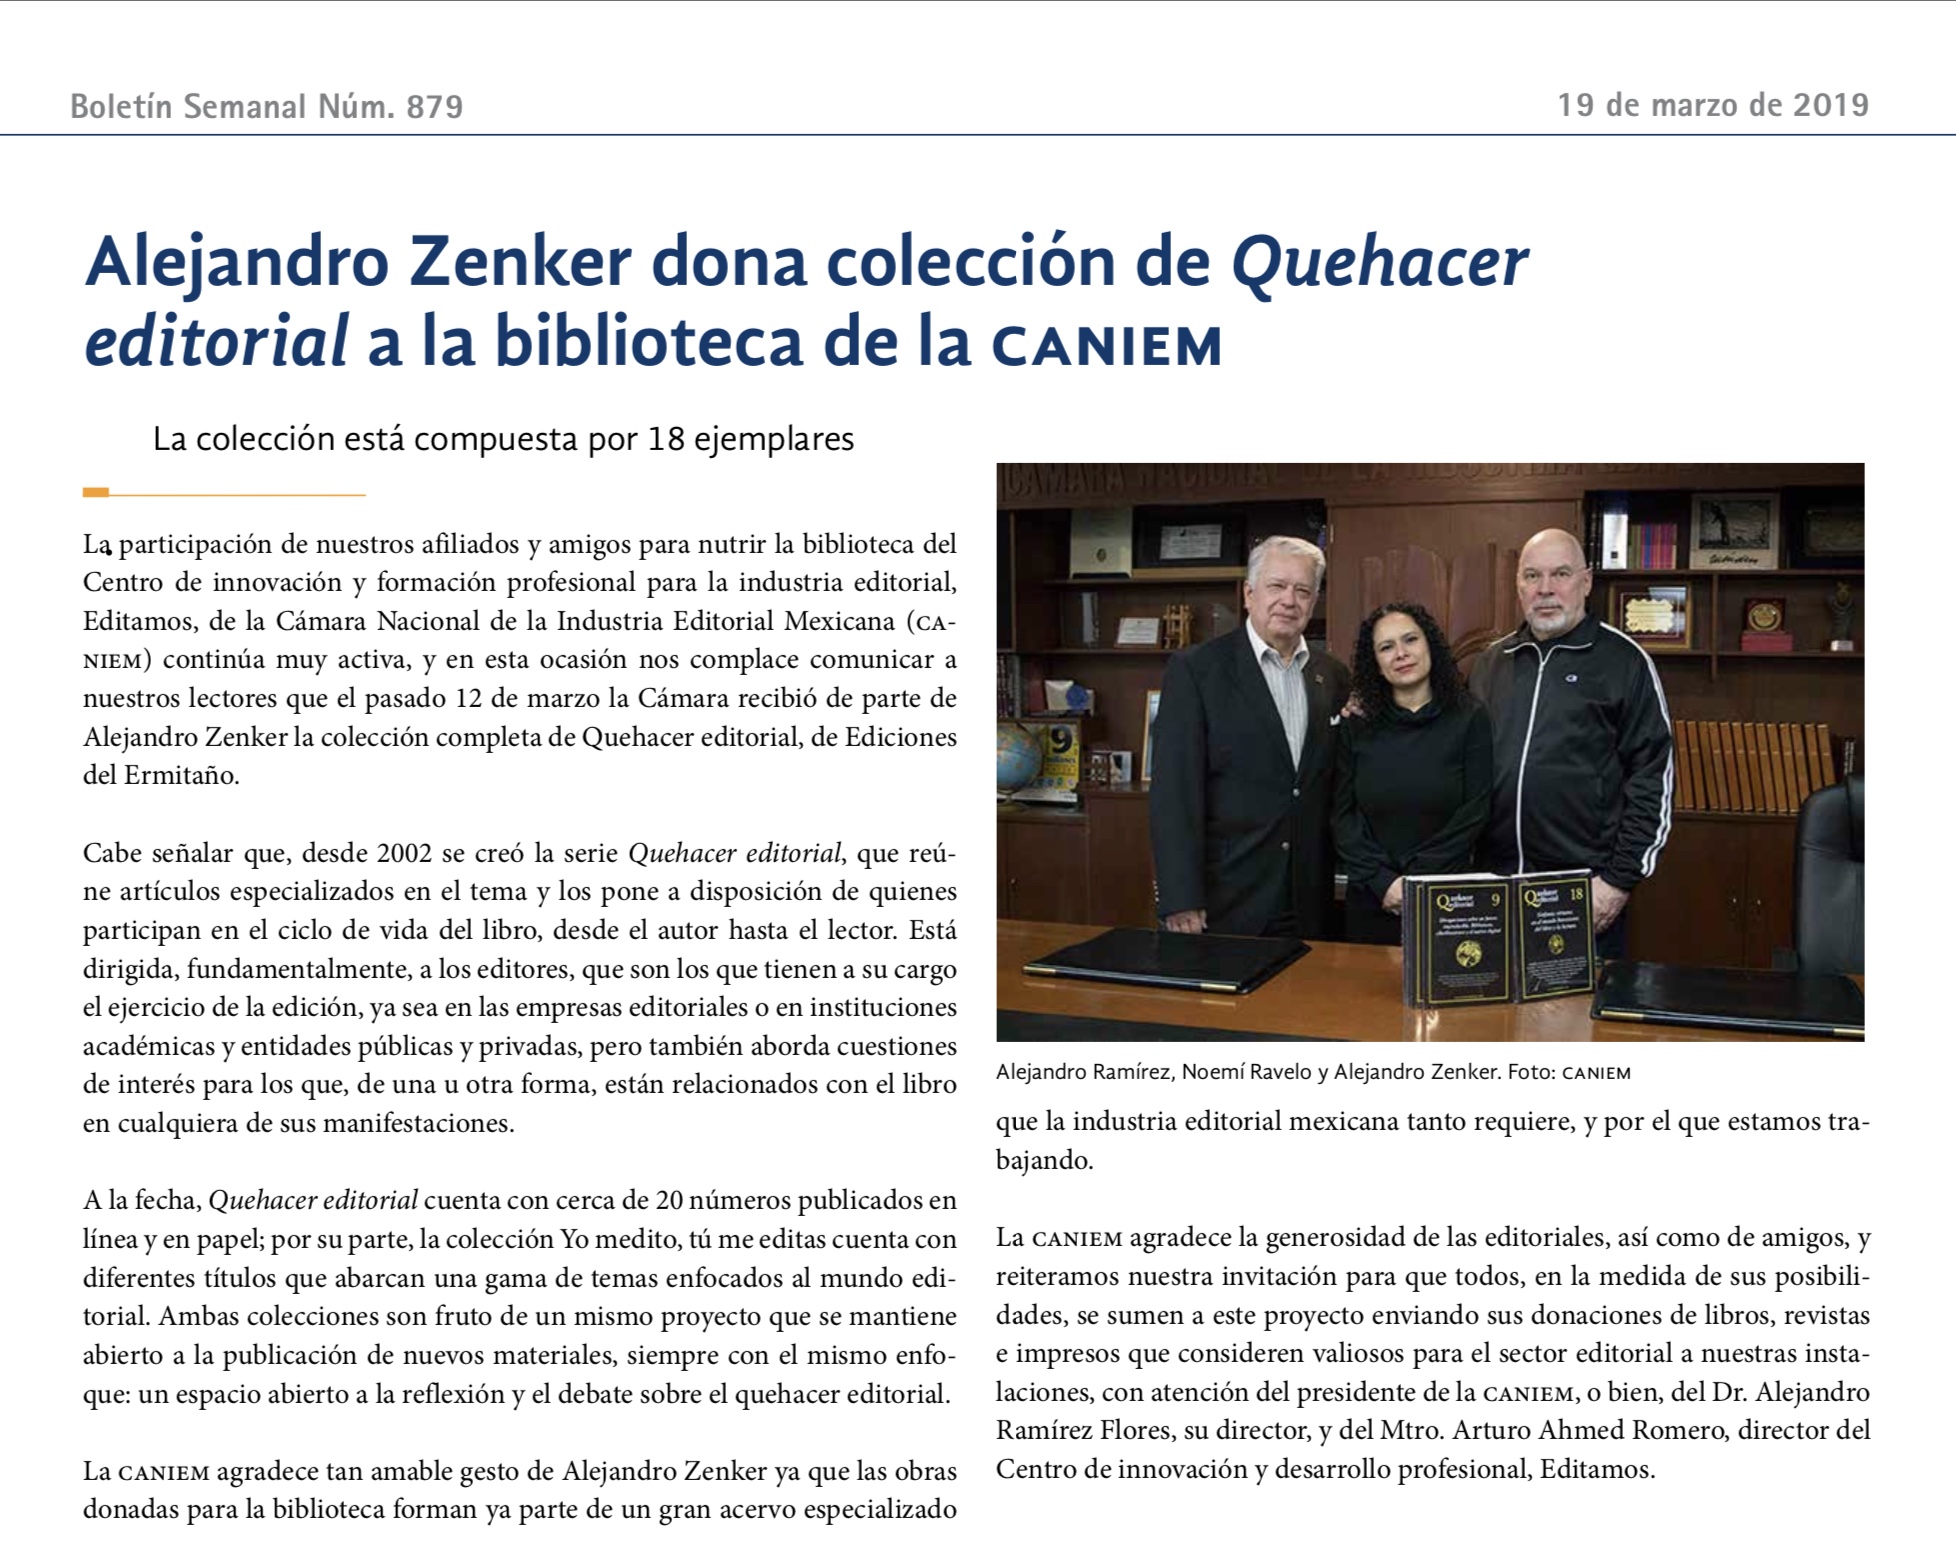 Donación de colección completa de Quehacer Editorial a la CANIEM